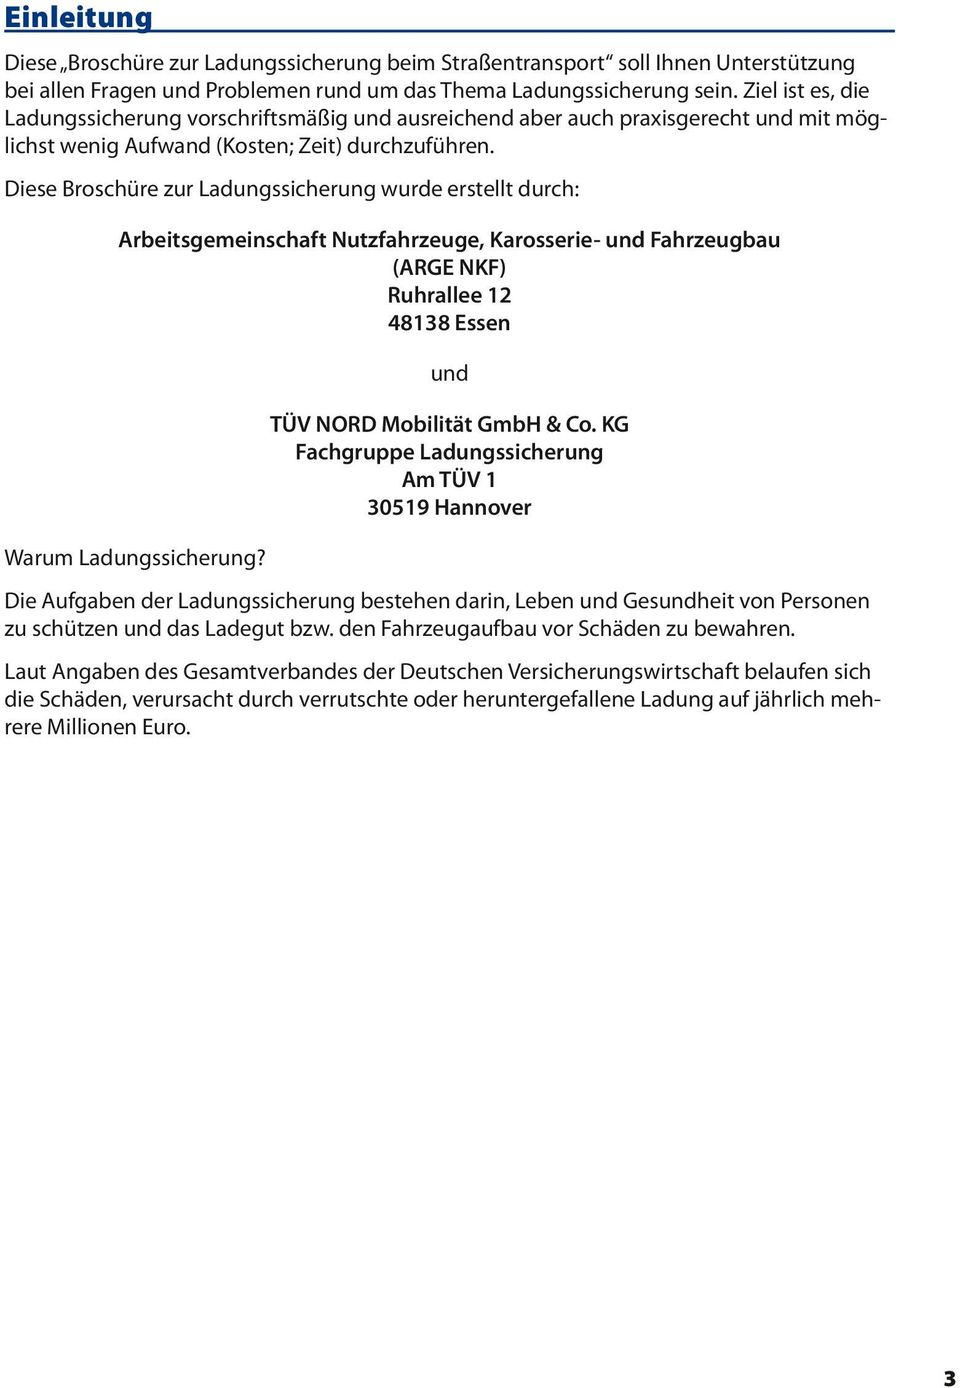 Diese Broschüre zur Ladungssicherung wurde erstellt durch: Arbeitsgemeinschaft Nutzfahrzeuge, Karosserie- und Fahrzeugbau (ARGE NKF) Ruhrallee 12 48138 Essen Warum Ladungssicherung?